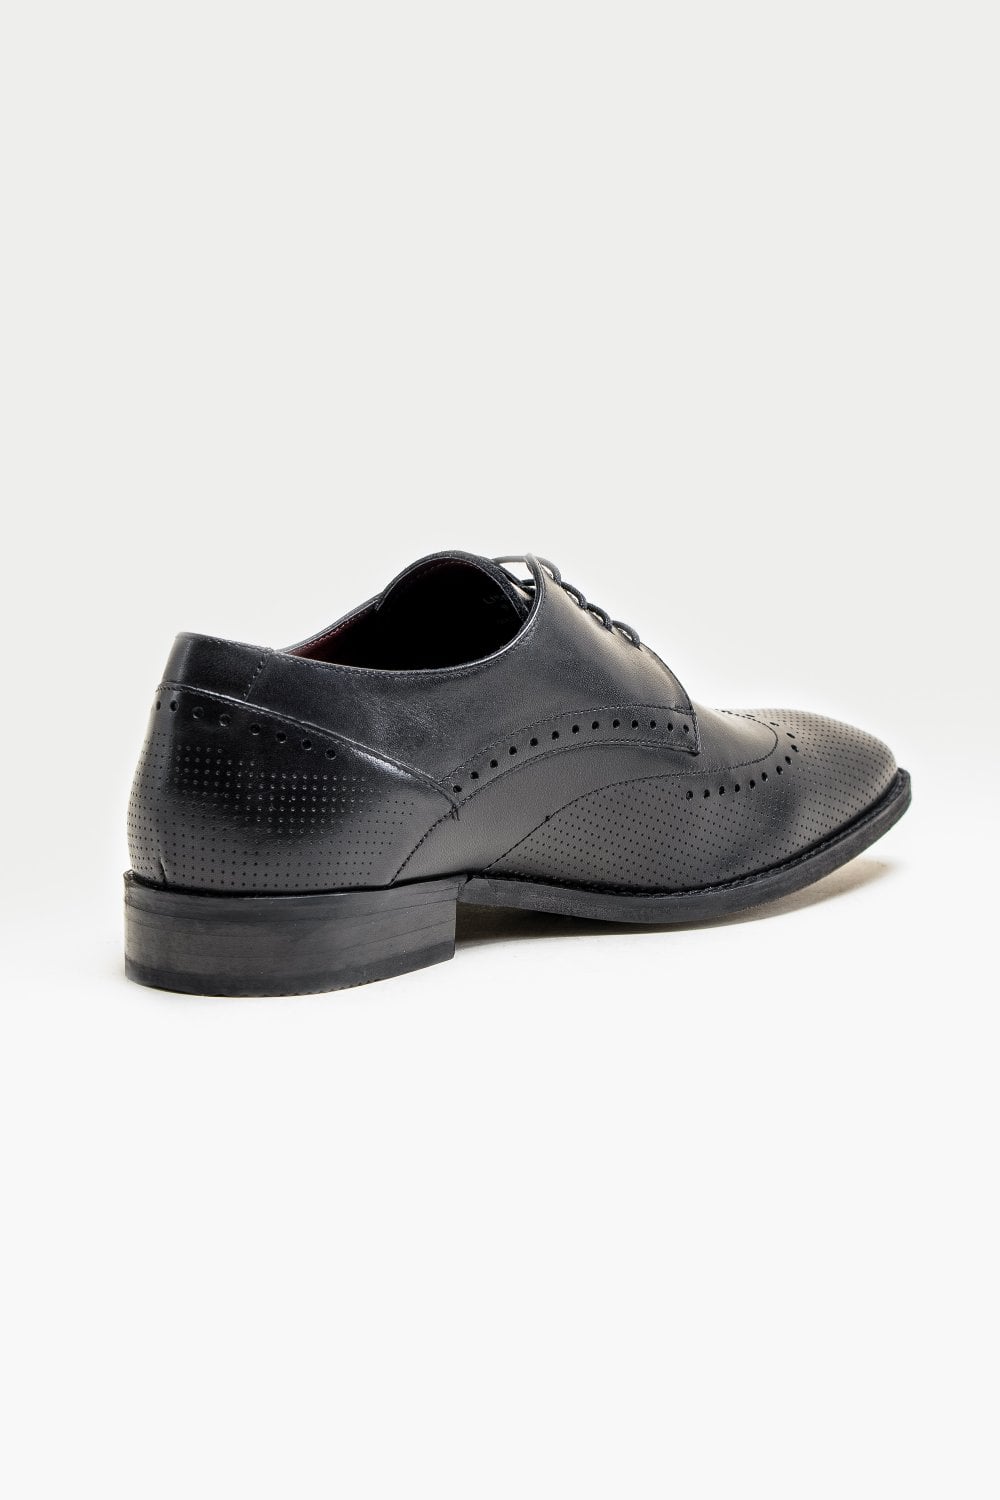 Cavani Lisbon Schoenen Black - Wingtip Brogue - schoenen